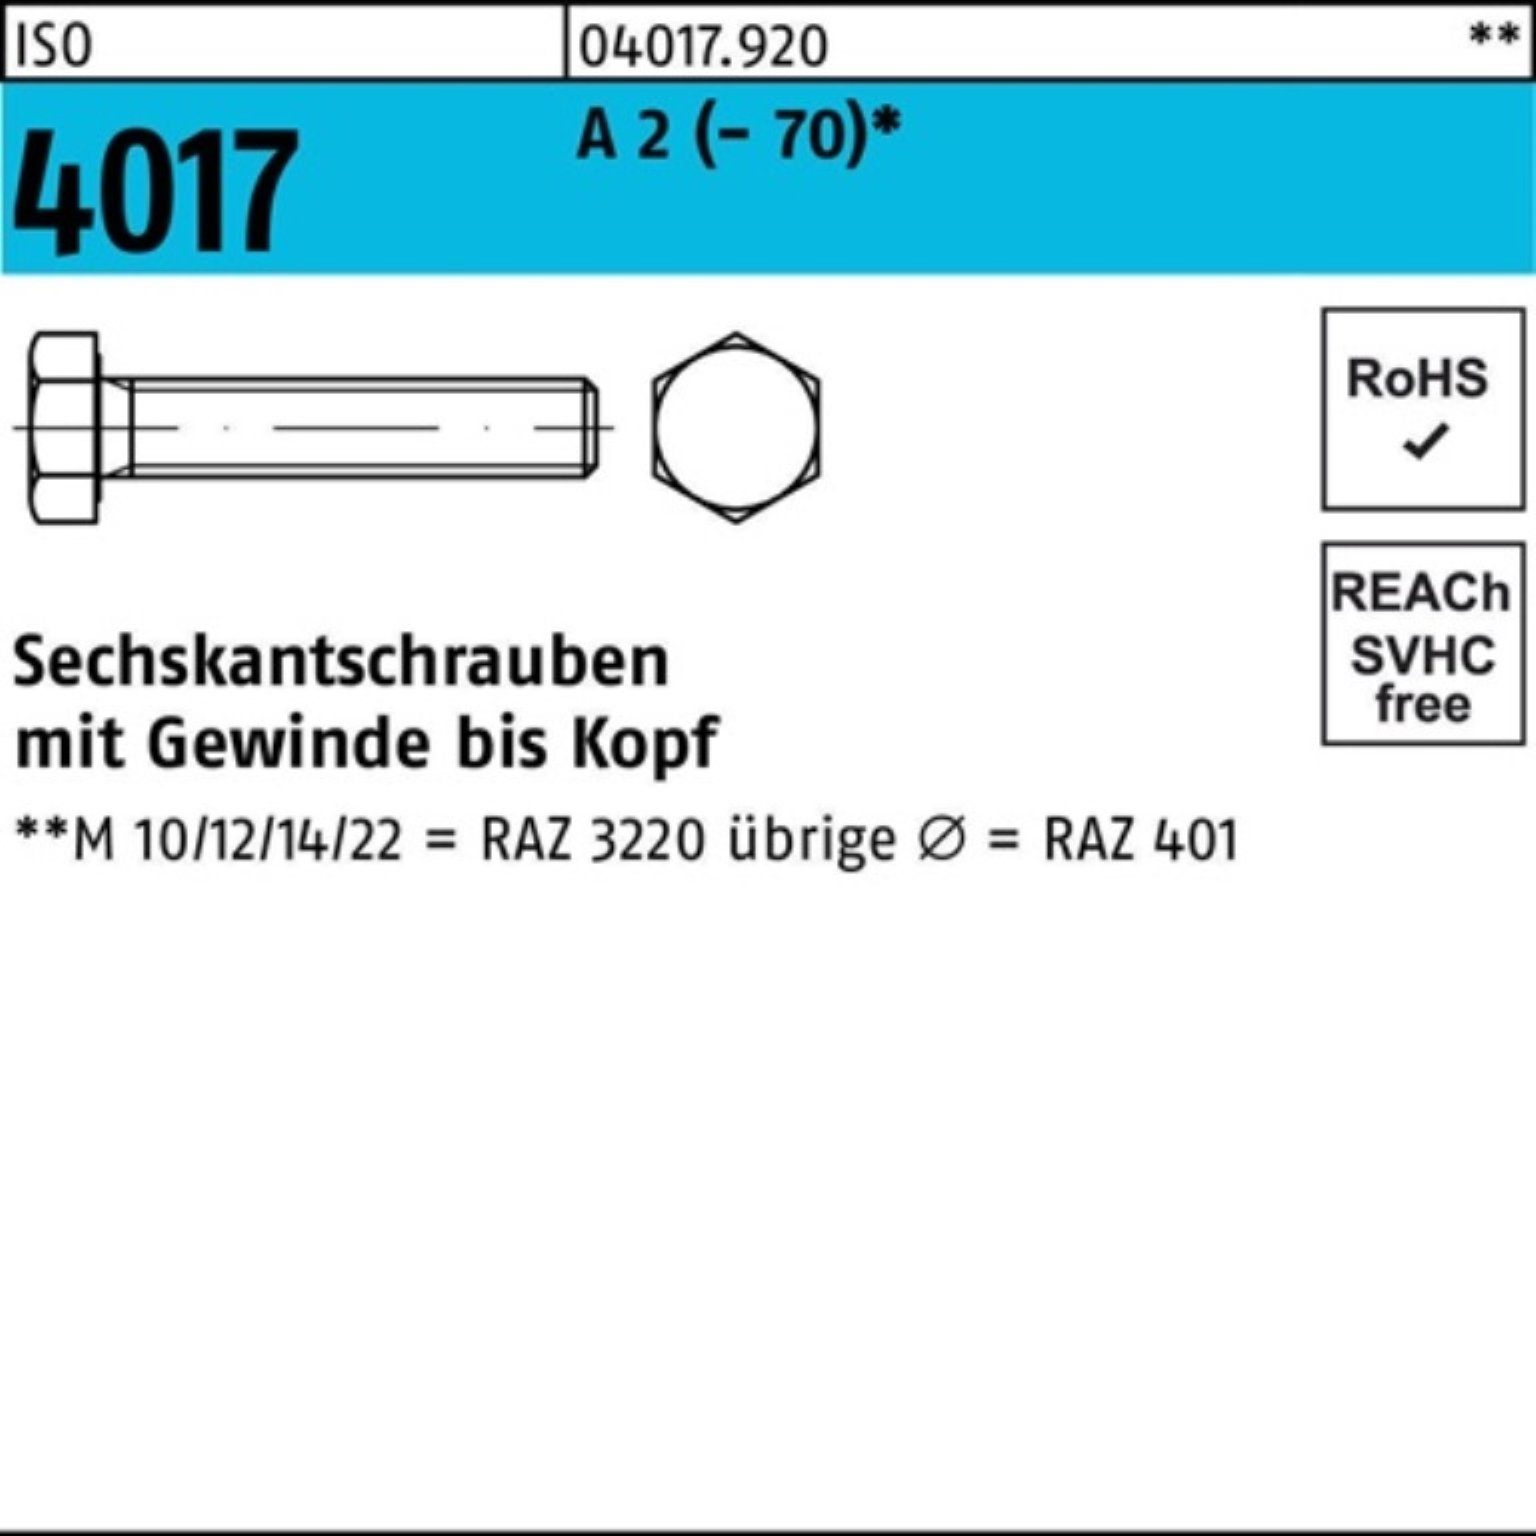 Bufab Sechskantschraube 100er Pack Sechskantschraube ISO 4017 VG M12x 60 A 2 (70) 50 Stück